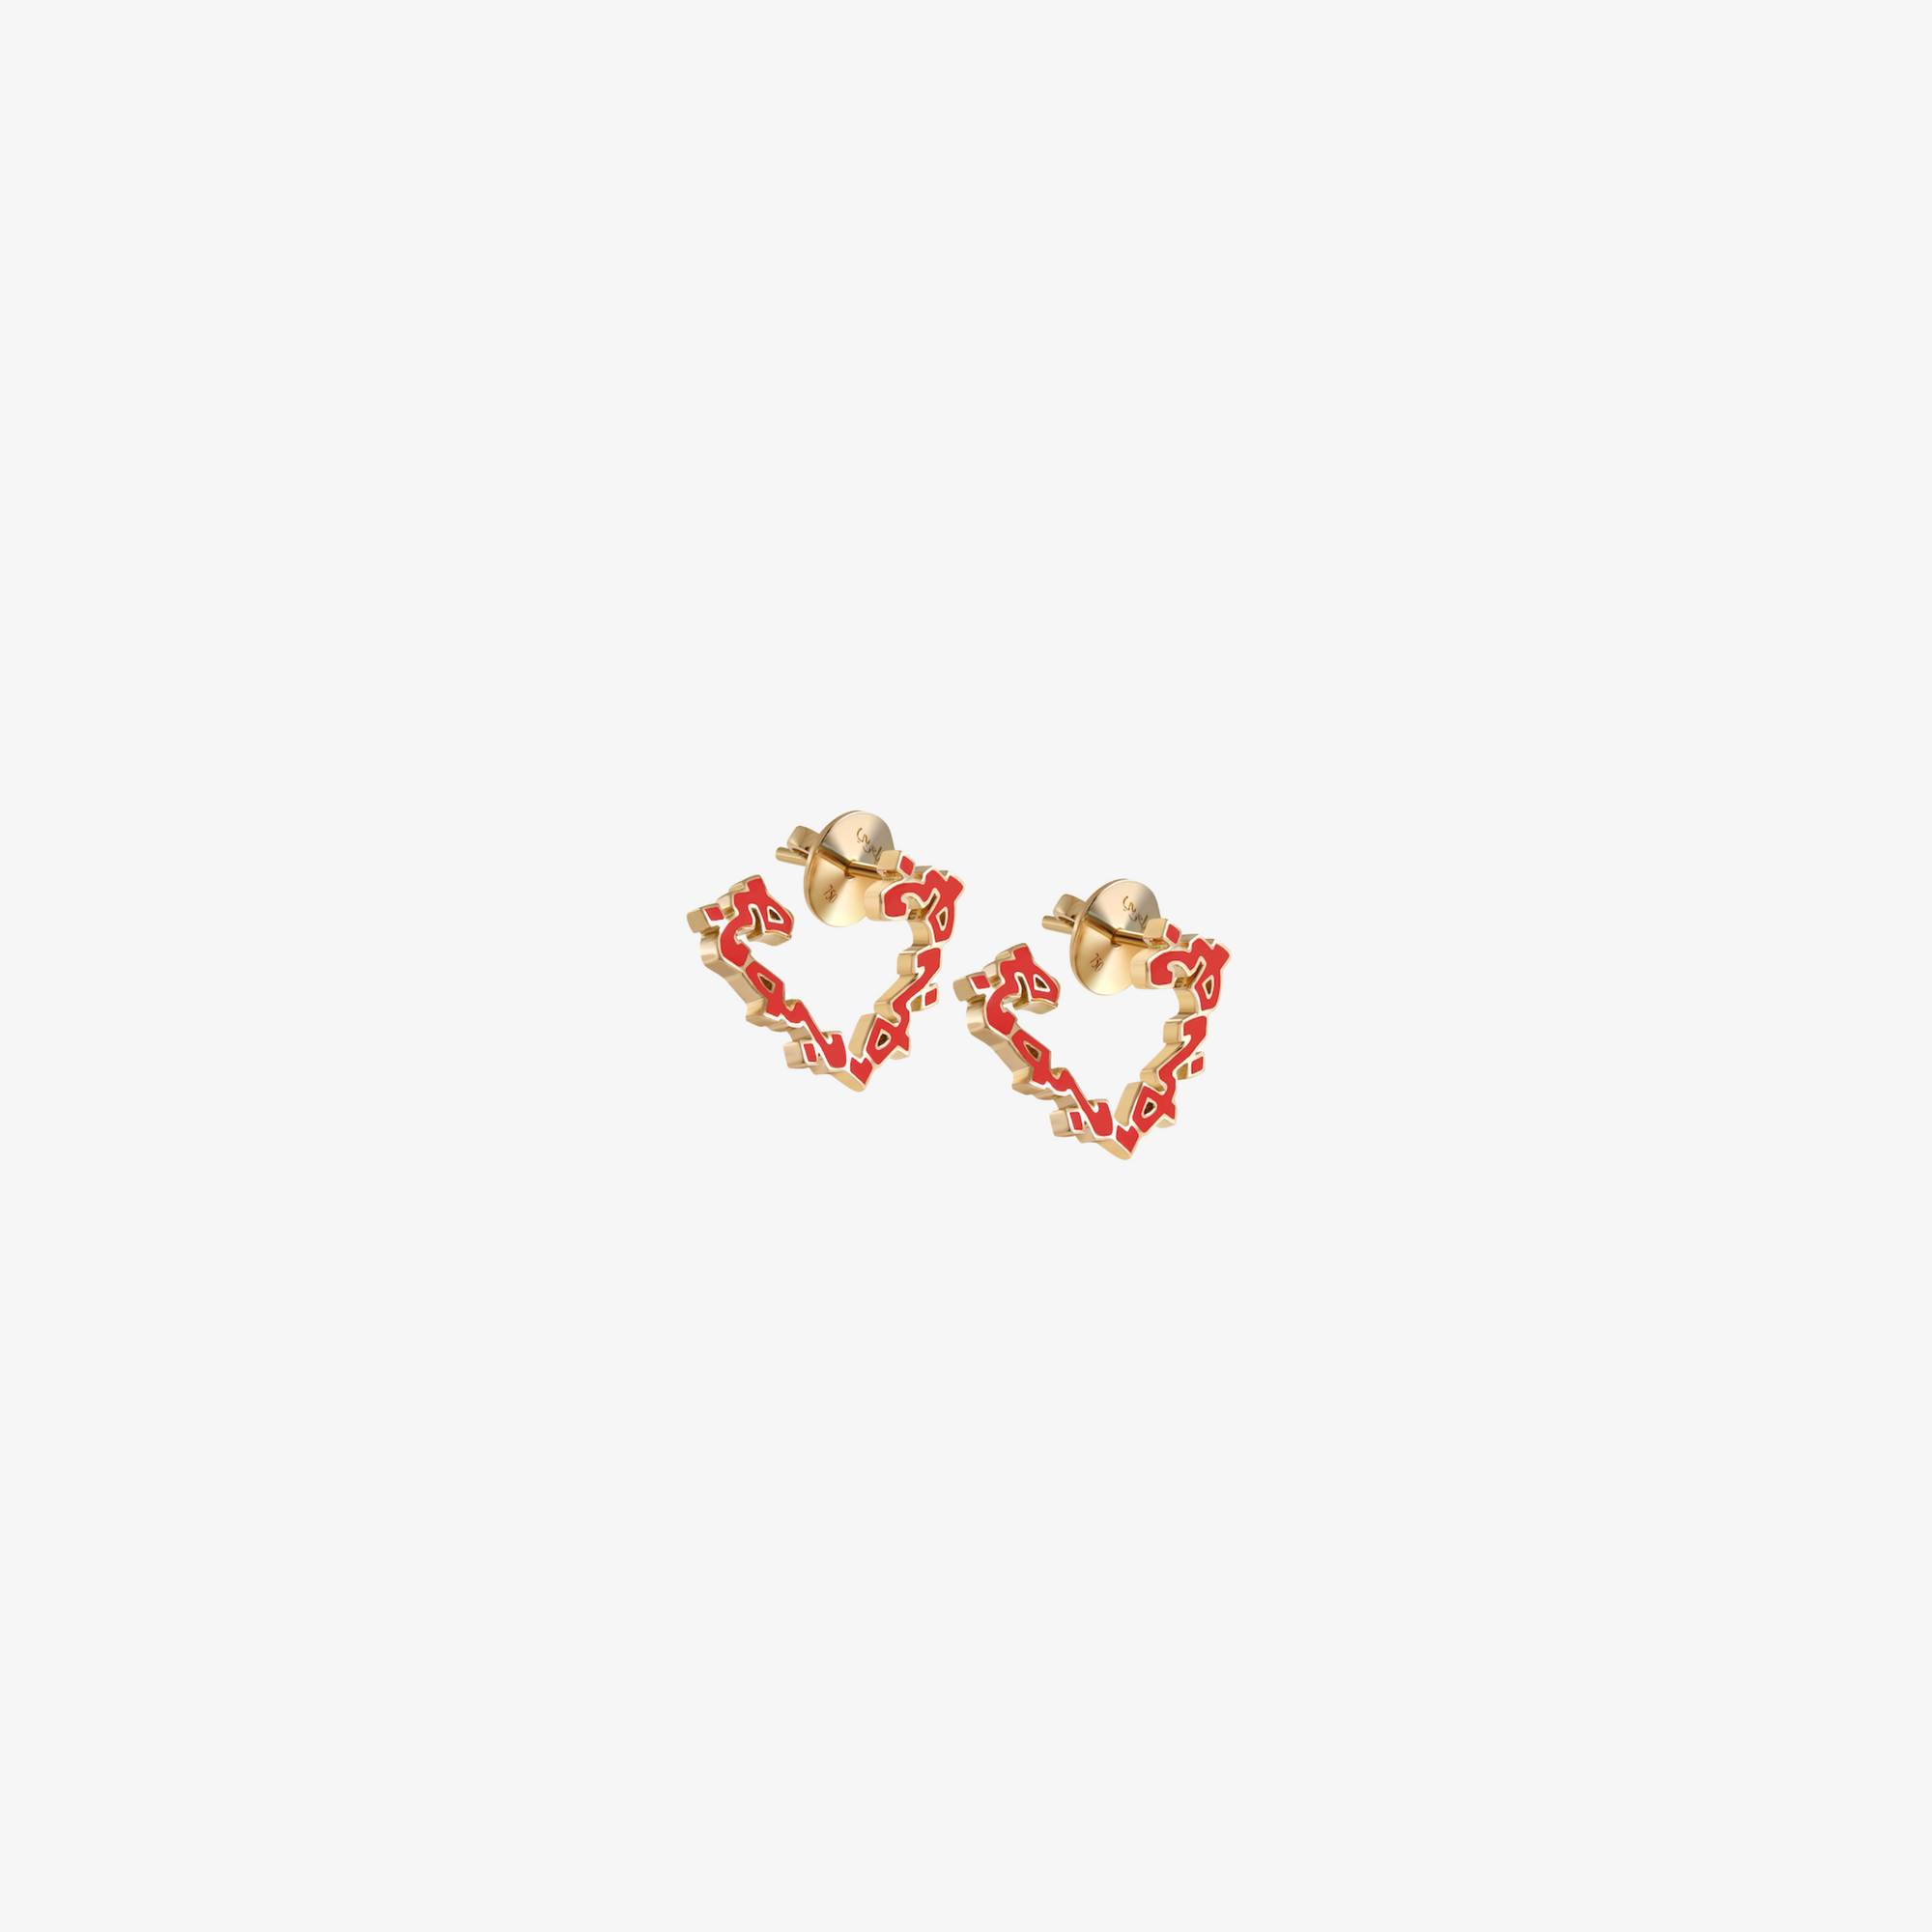 HOBB — Gold & Enamel "Love" Earrings